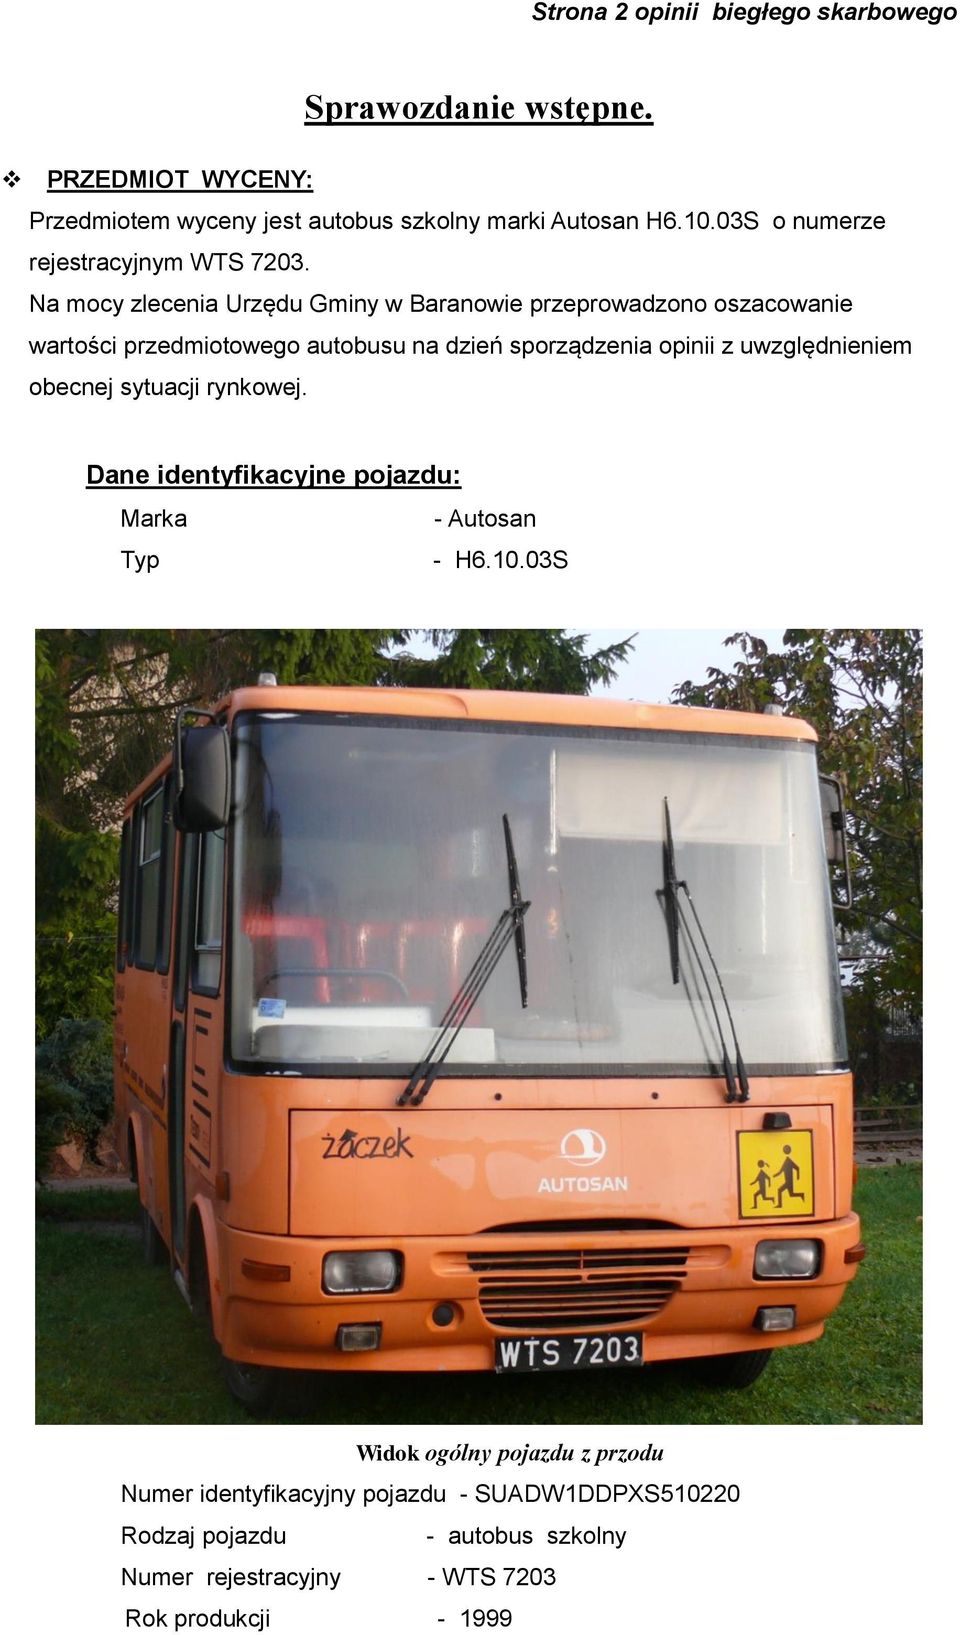 Na mocy zlecenia Urzędu Gminy w Baranowie przeprowadzono oszacowanie wartości przedmiotowego autobusu na dzień sporządzenia opinii z